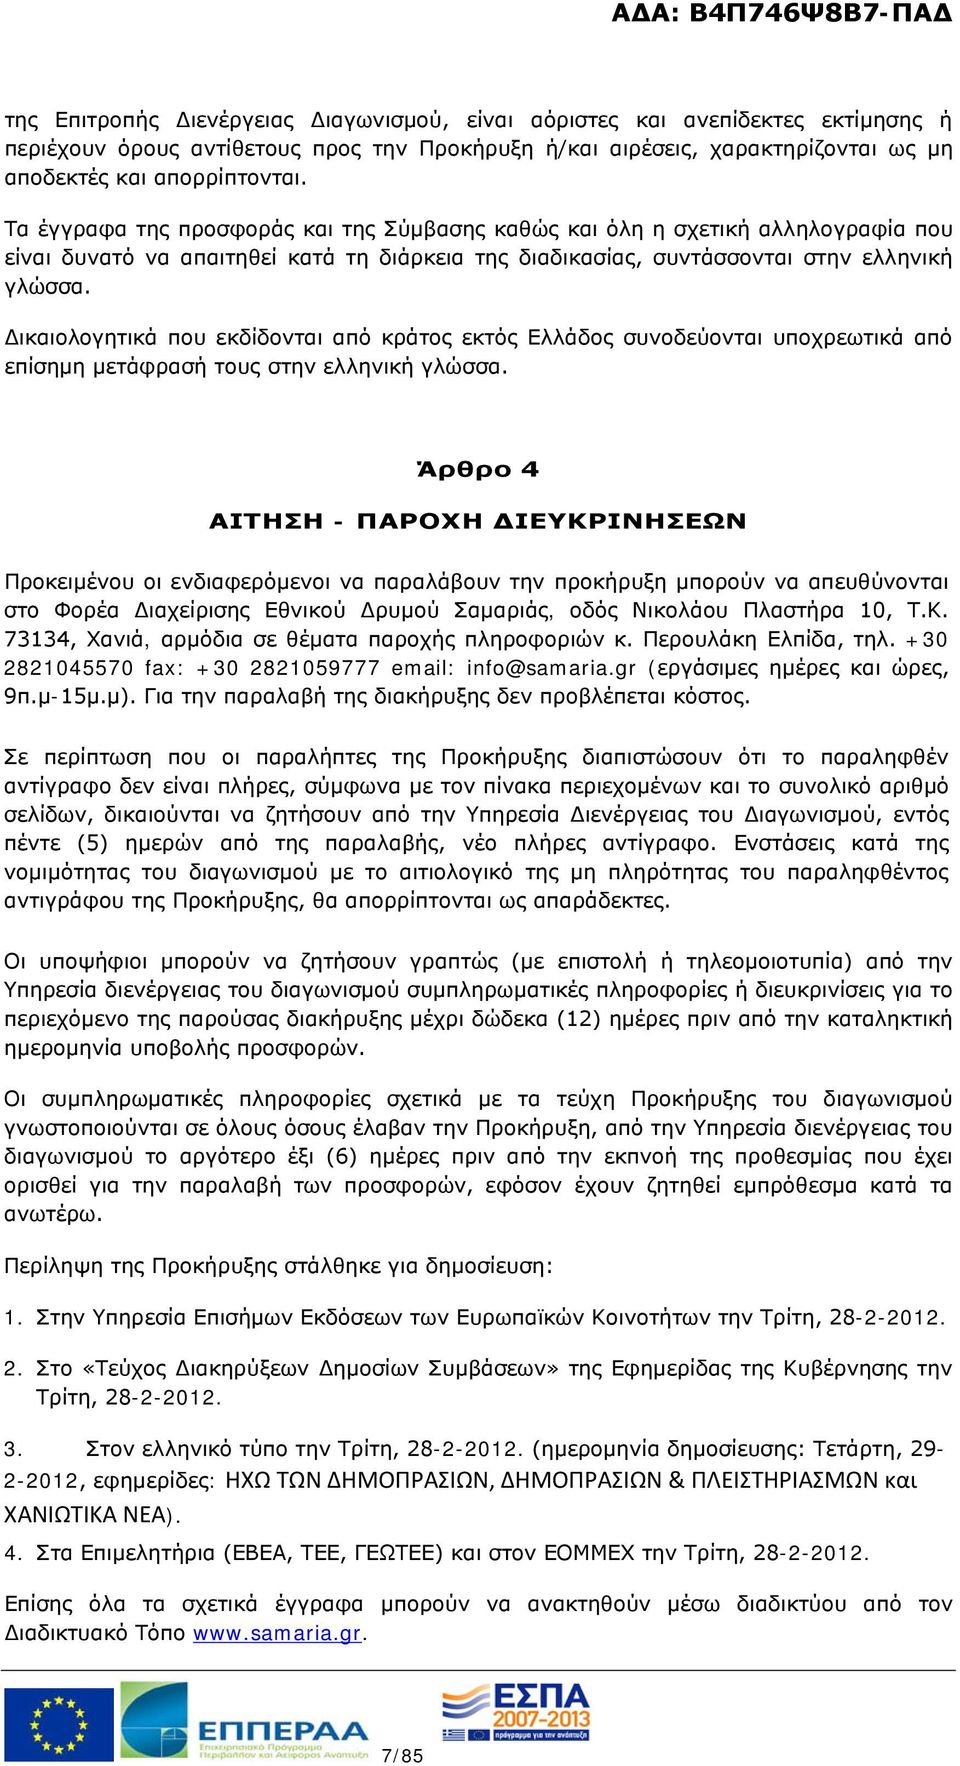 Δικαιολογητικά που εκδίδονται από κράτος εκτός Ελλάδος συνοδεύονται υποχρεωτικά από επίσημη μετάφρασή τους στην ελληνική γλώσσα.